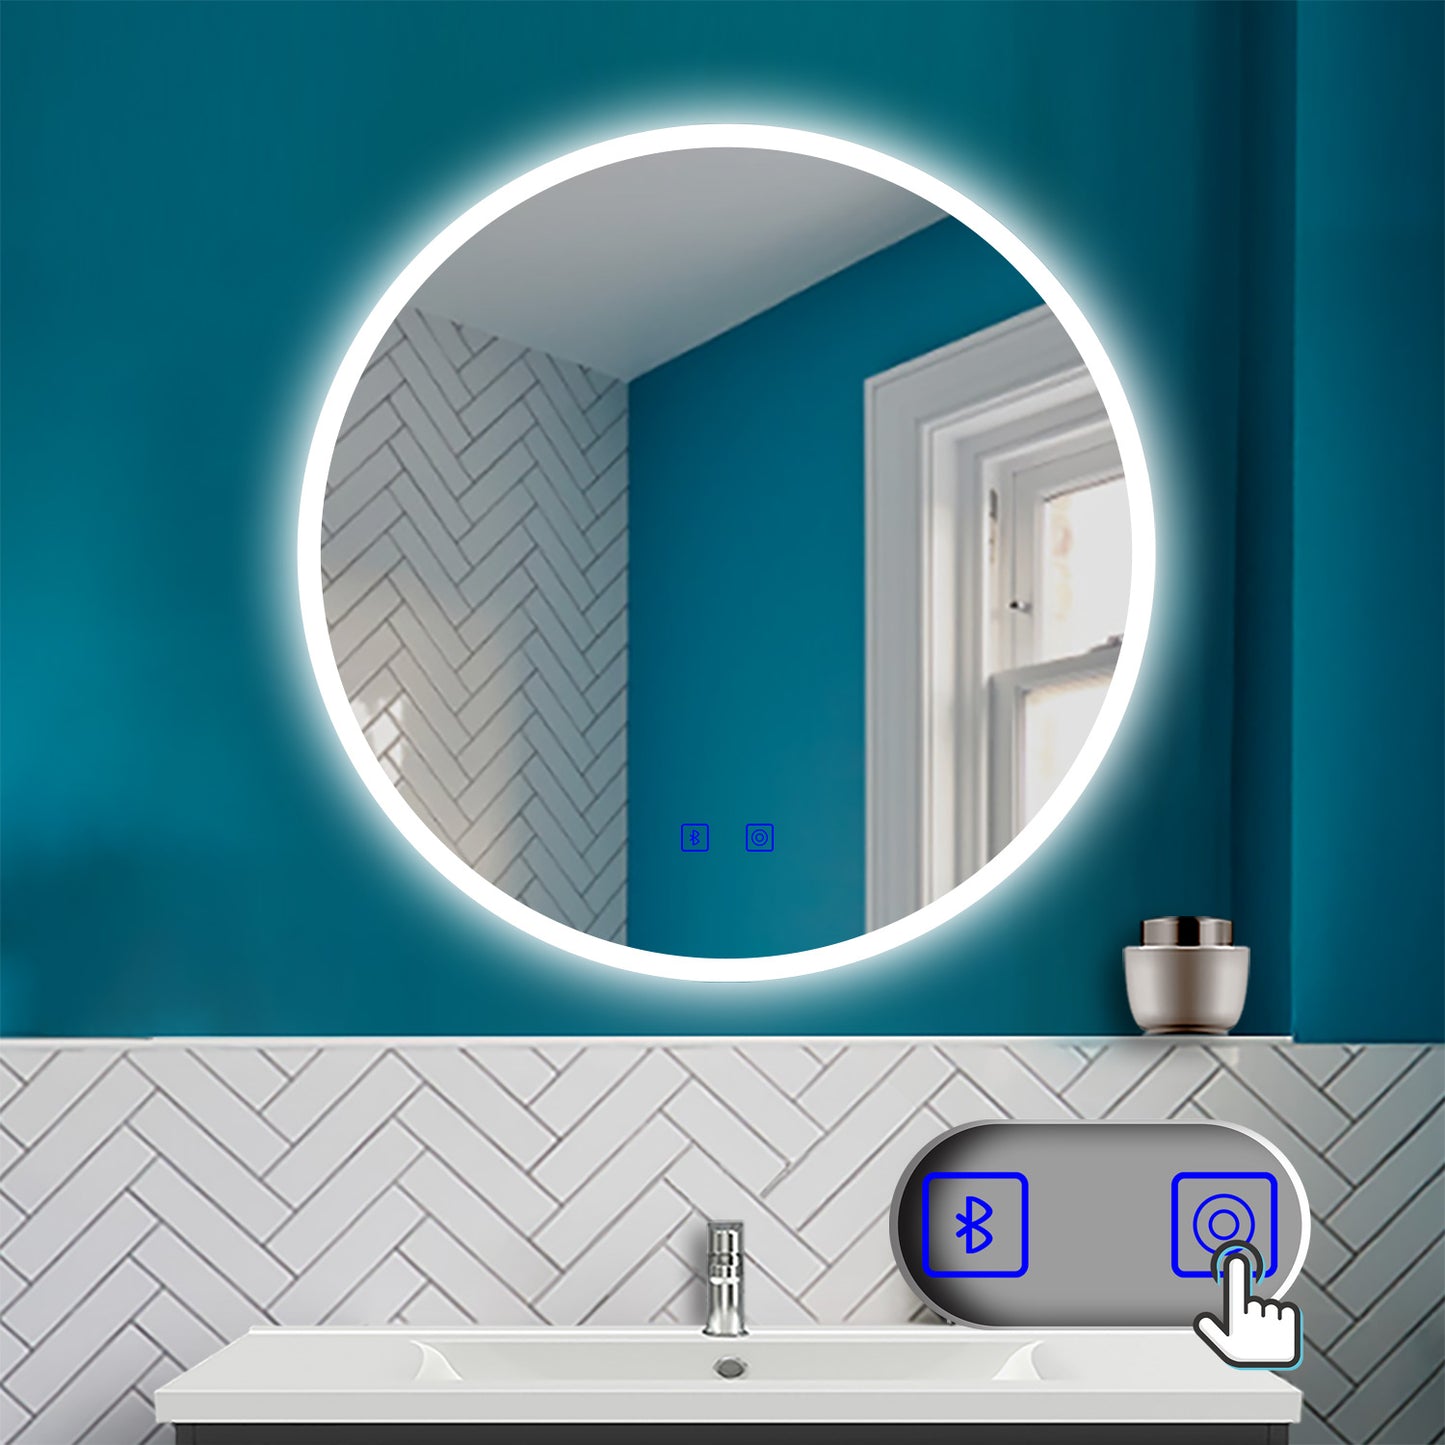 Badspiegel Badezimmerspiegel Rund Spiegel mit LED Beleuchtung, Φ 60 cm